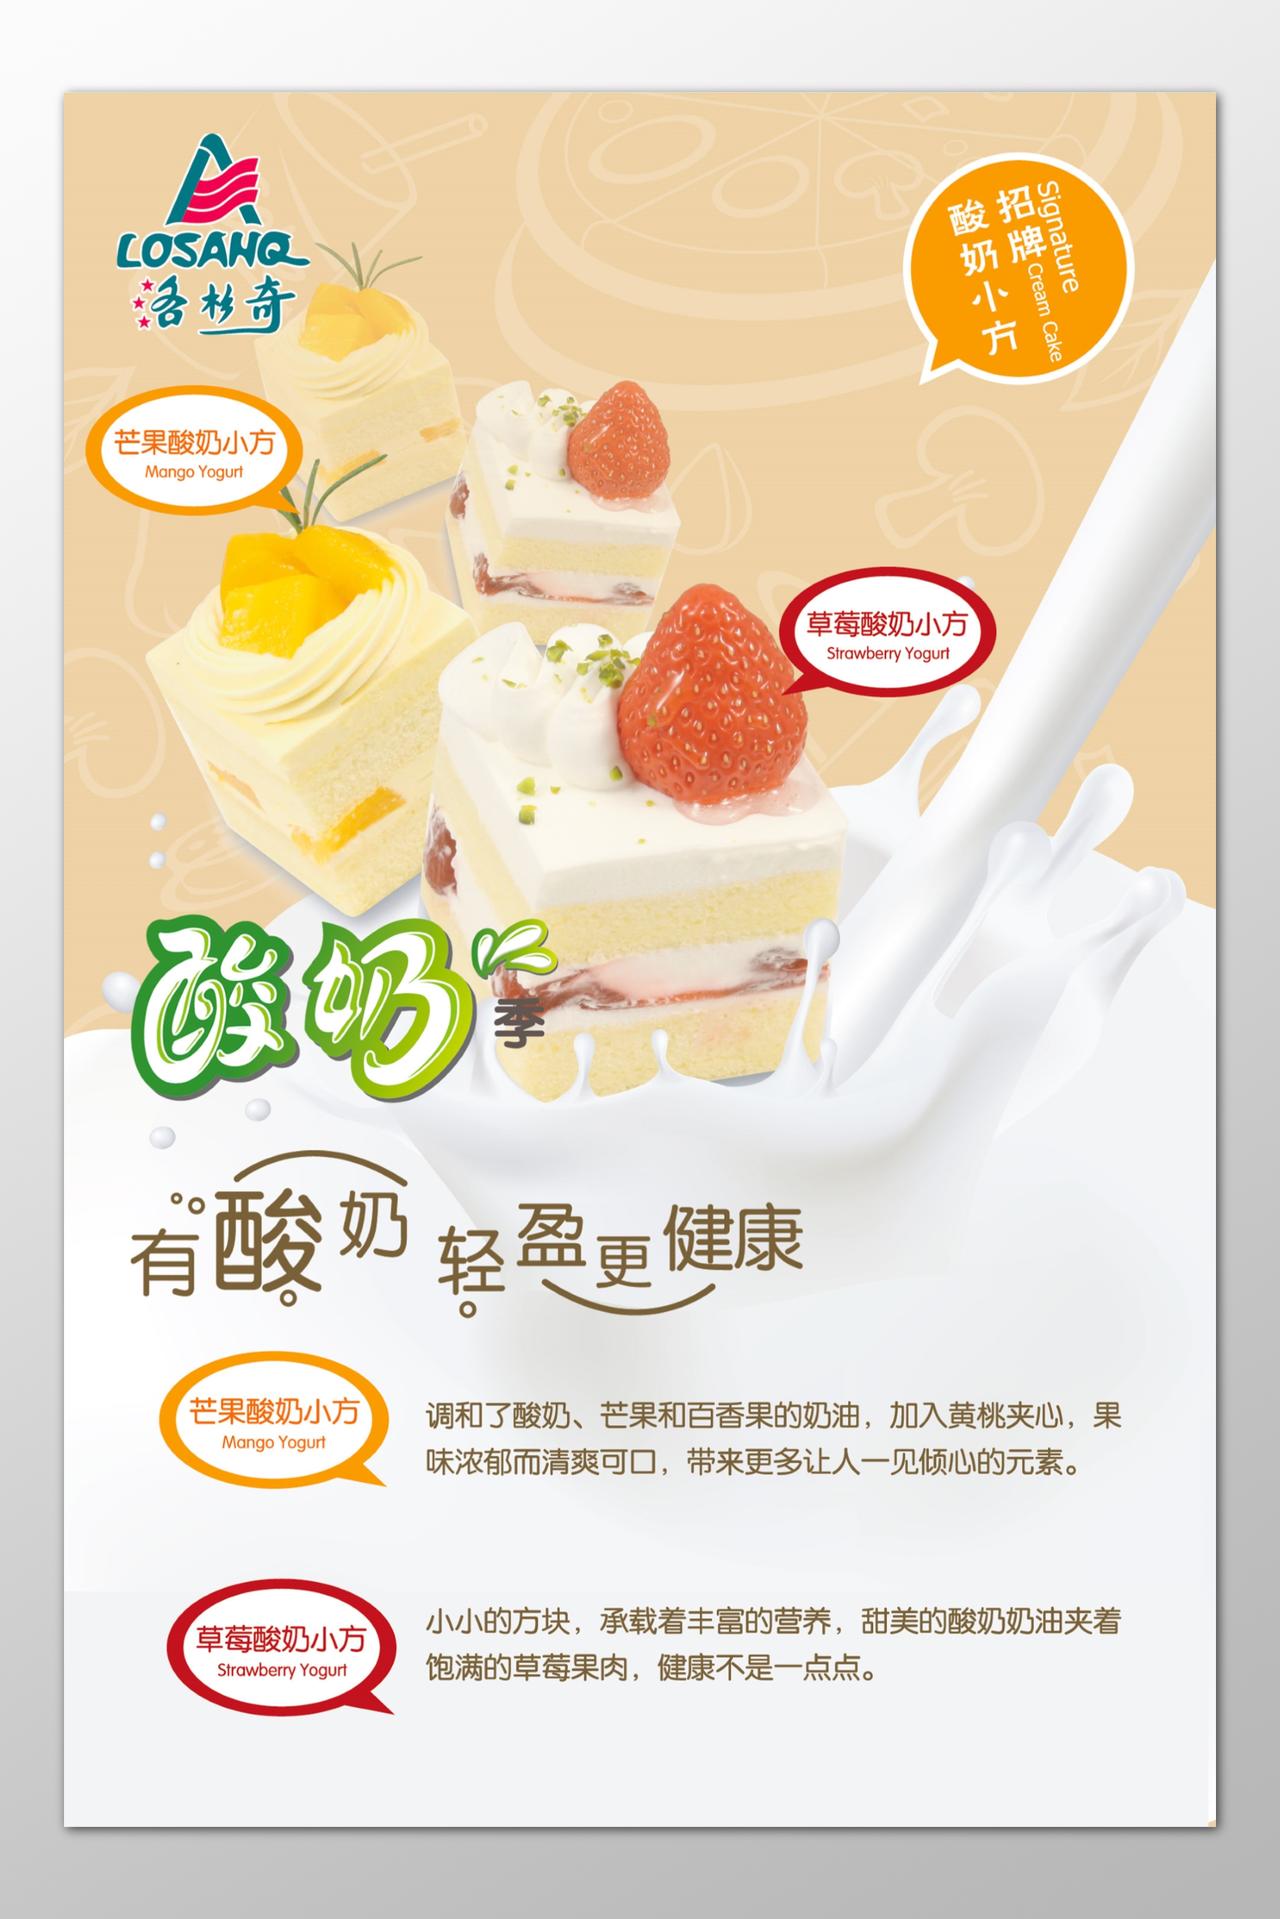 牛奶生鲜饮品招牌酸奶轻盈健康清爽可口营养丰富海报模板